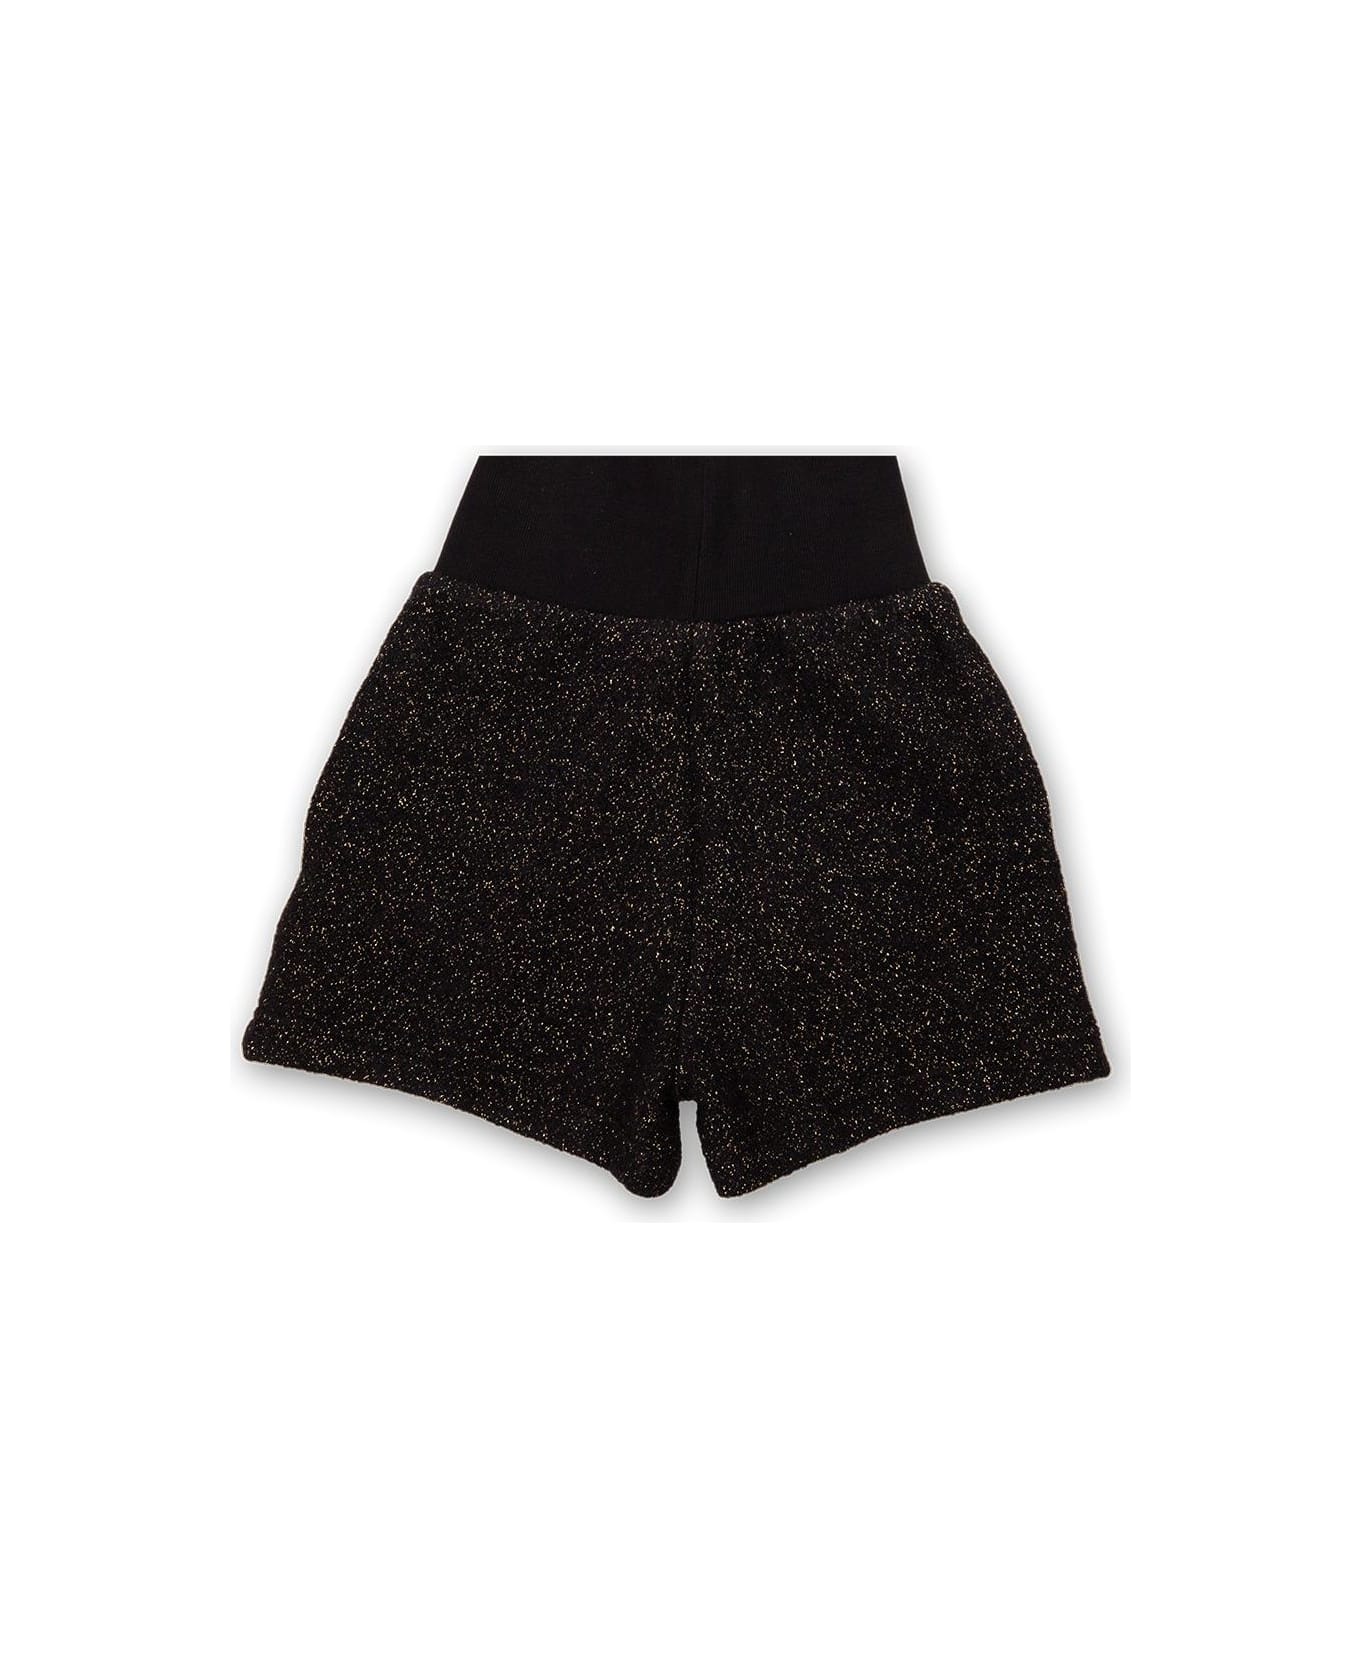 Balmain Lurex Shorts - Black/gold ボトムス